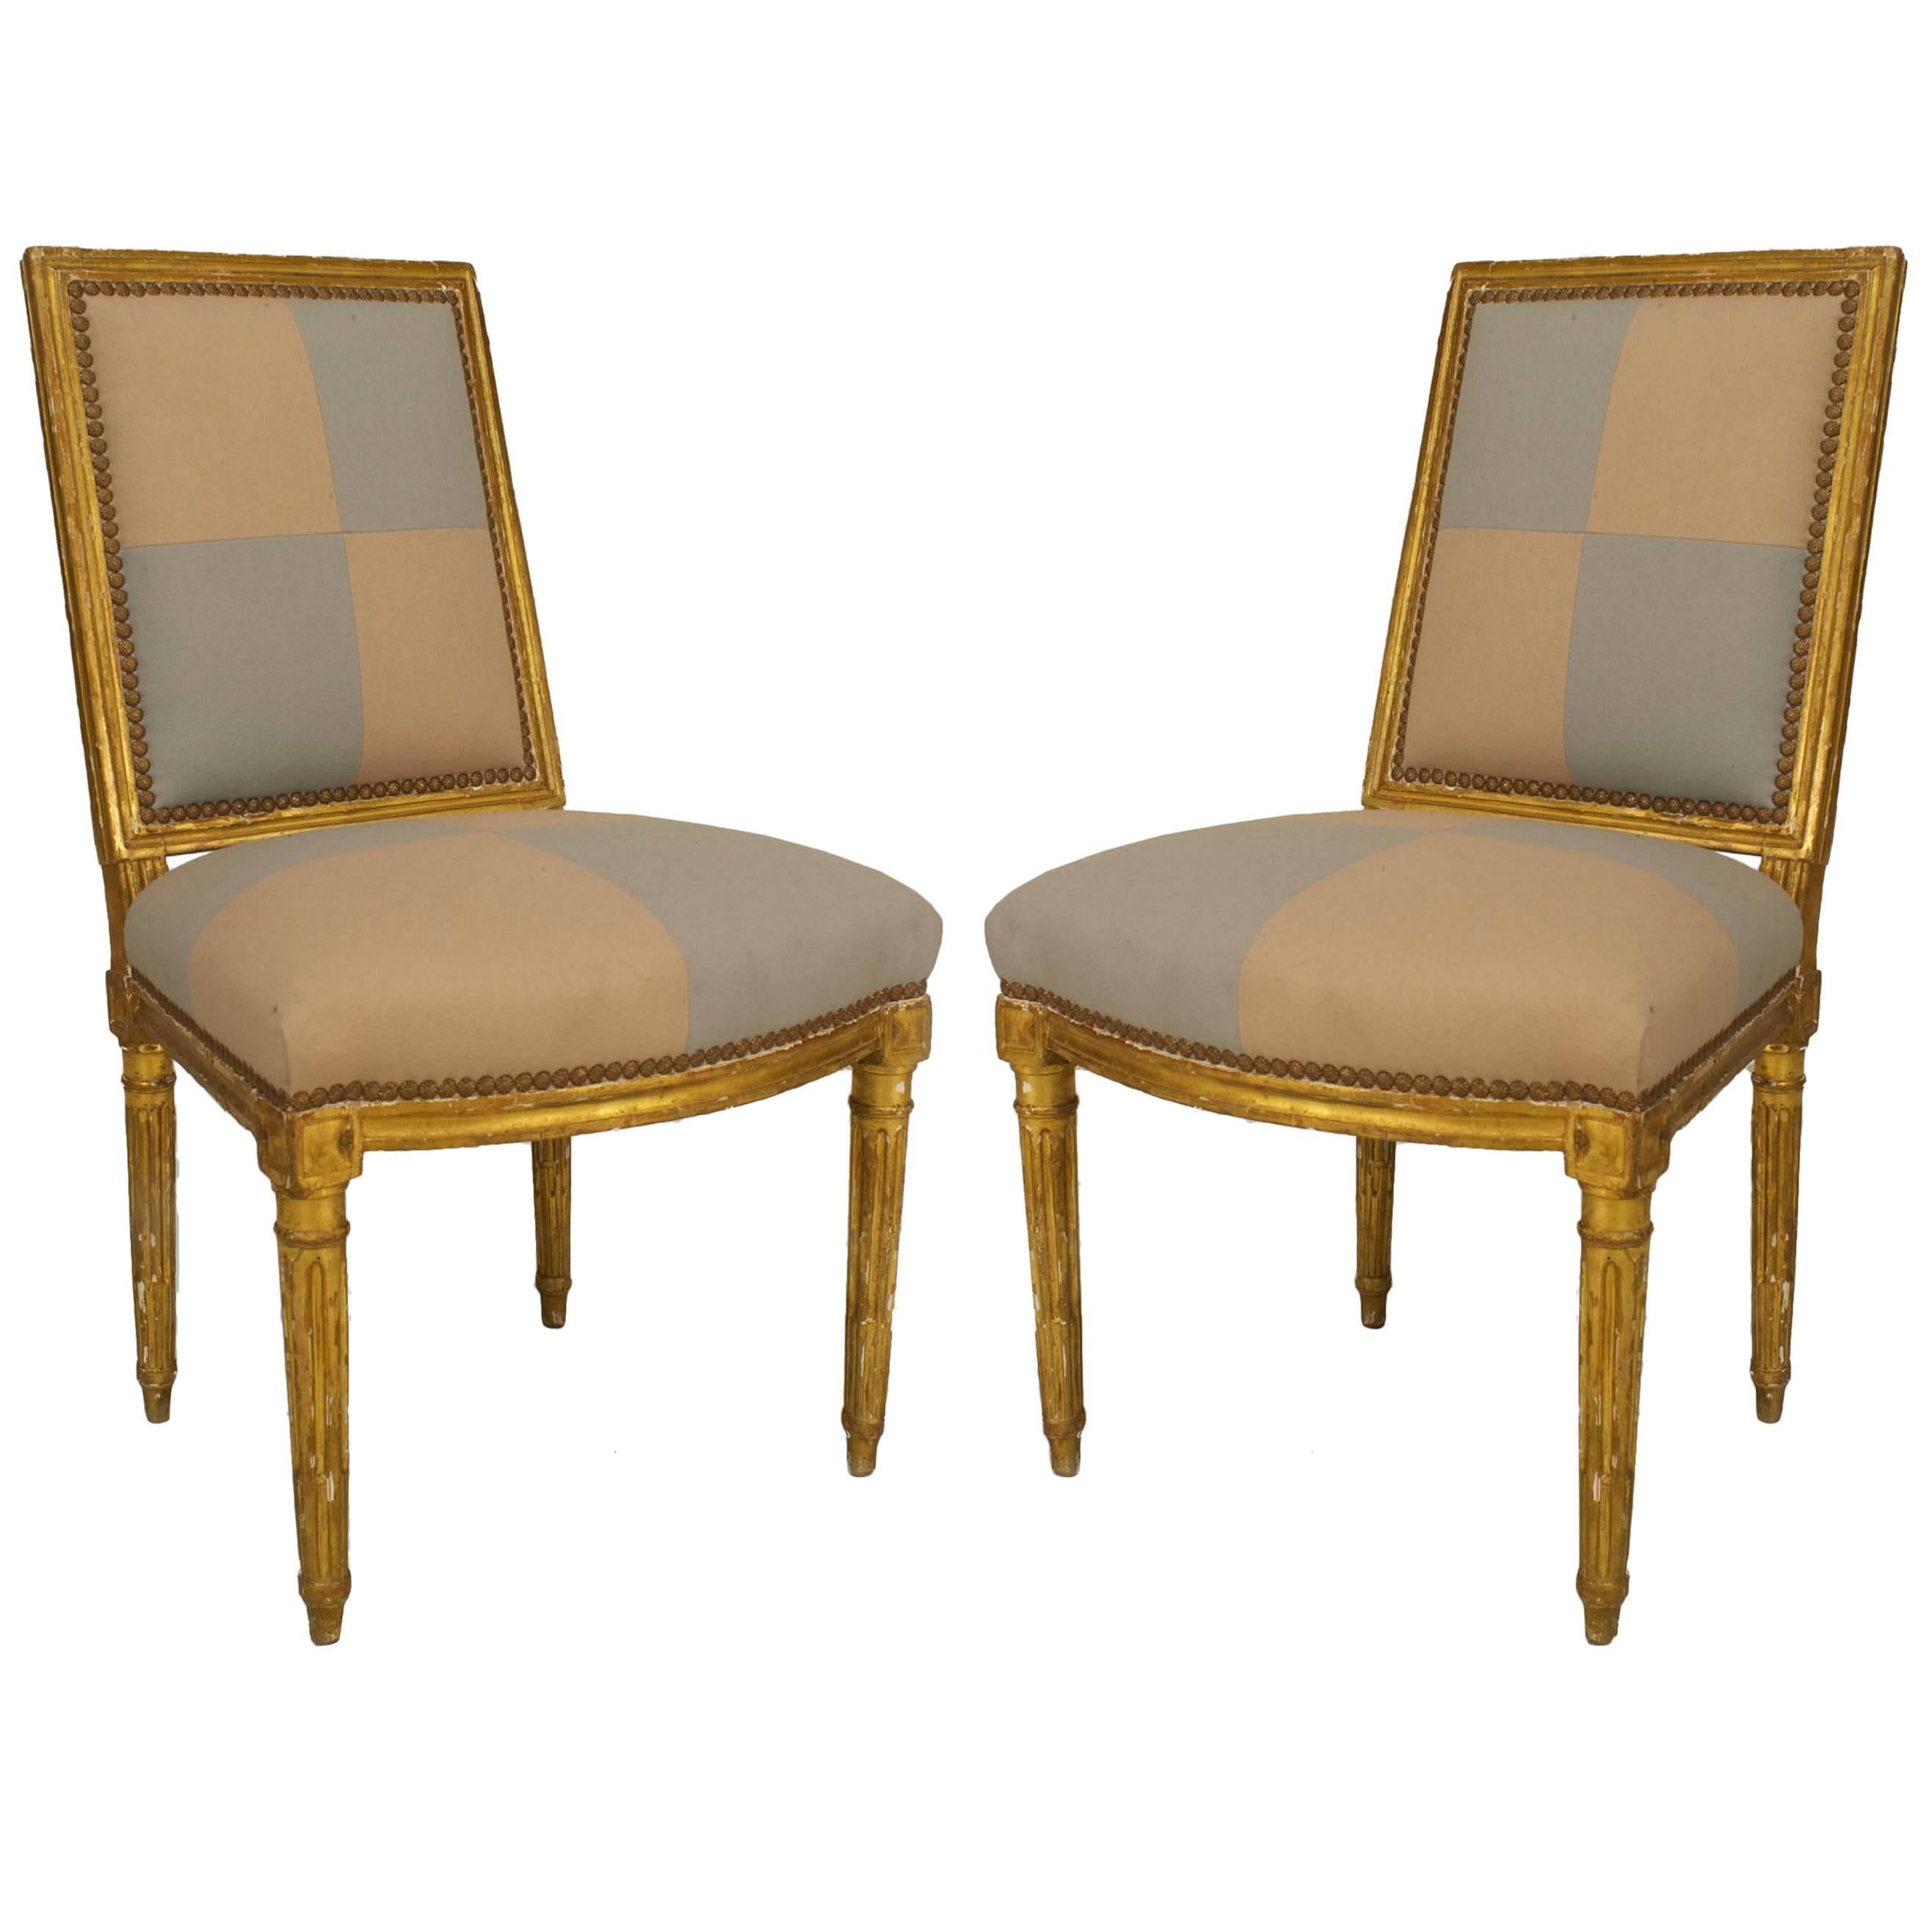 Paire de chaises d'appoint françaises Louis XVI dorées et dorées